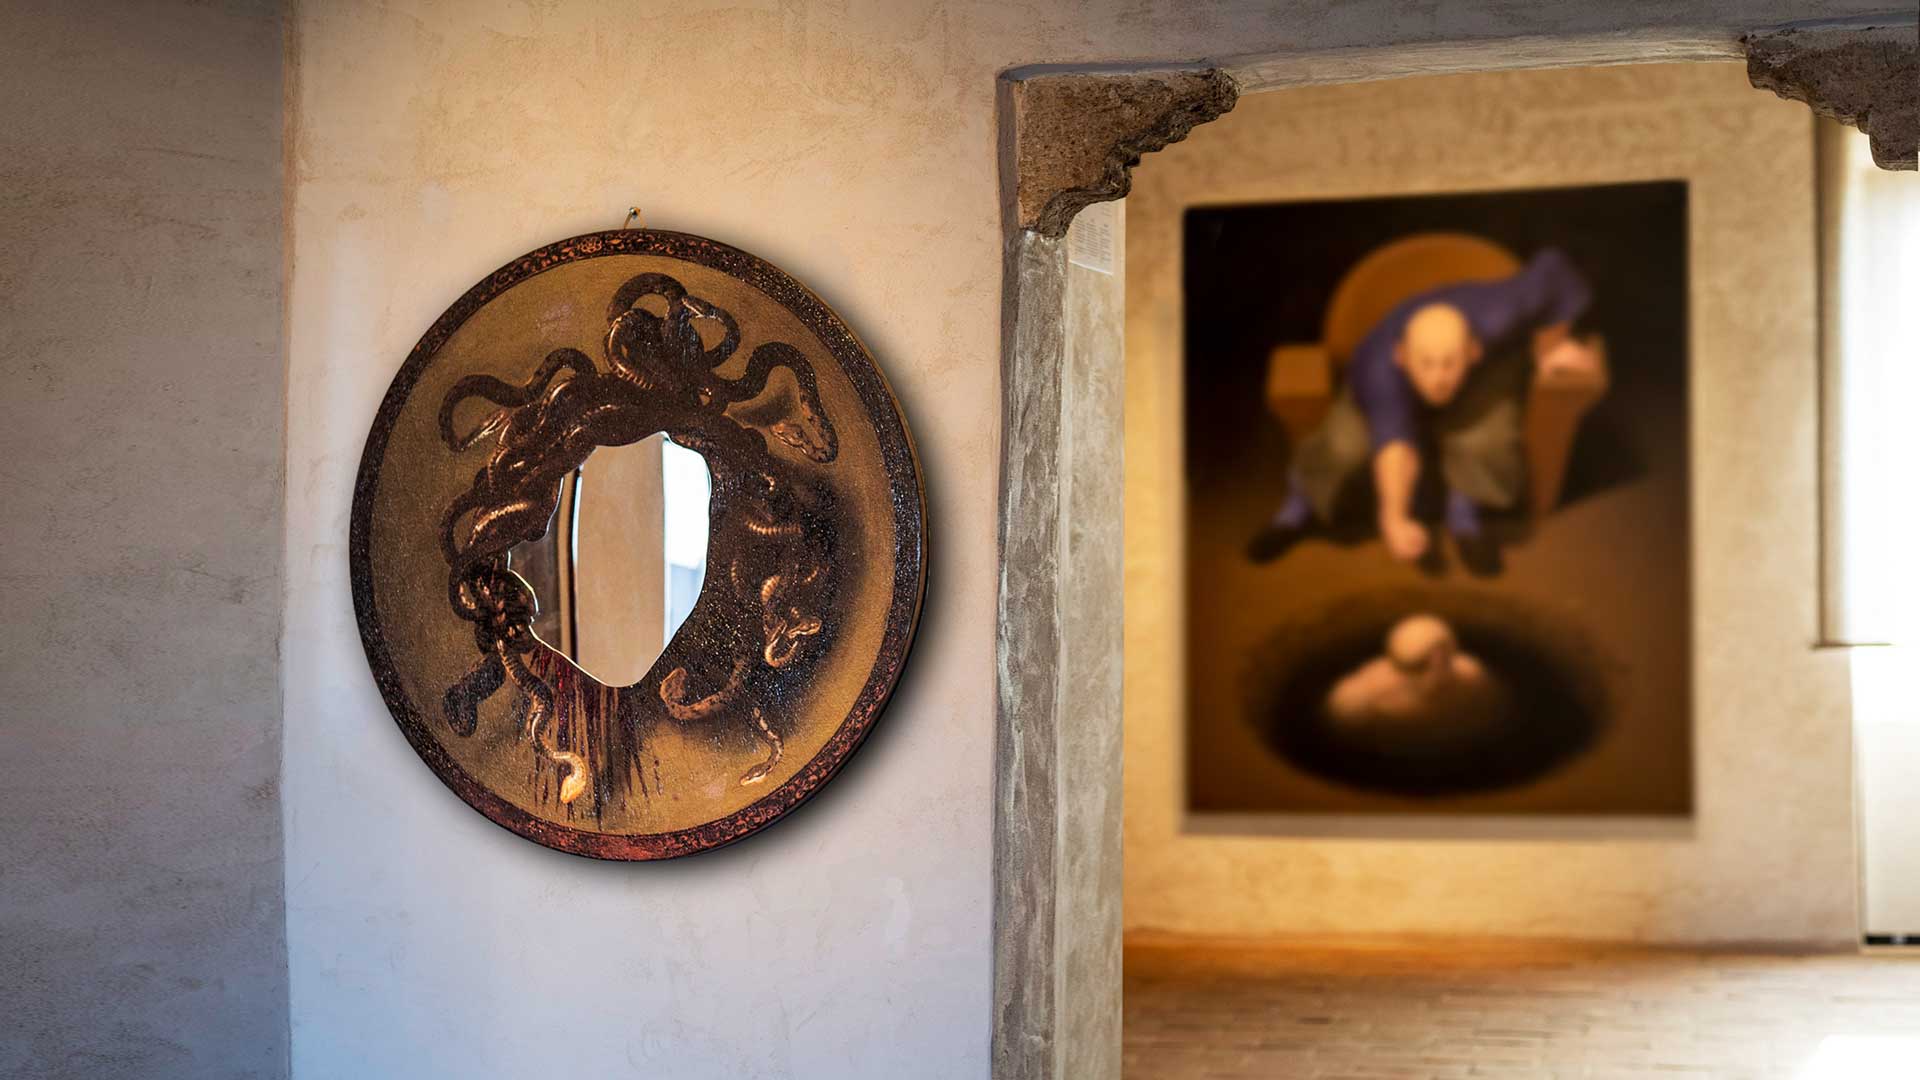 STUDIO AMEBE "Psycho" Mirror for Eccentrici e Solitari Exhibition, Vittorio Sgarbi ph.© Contemplazioni